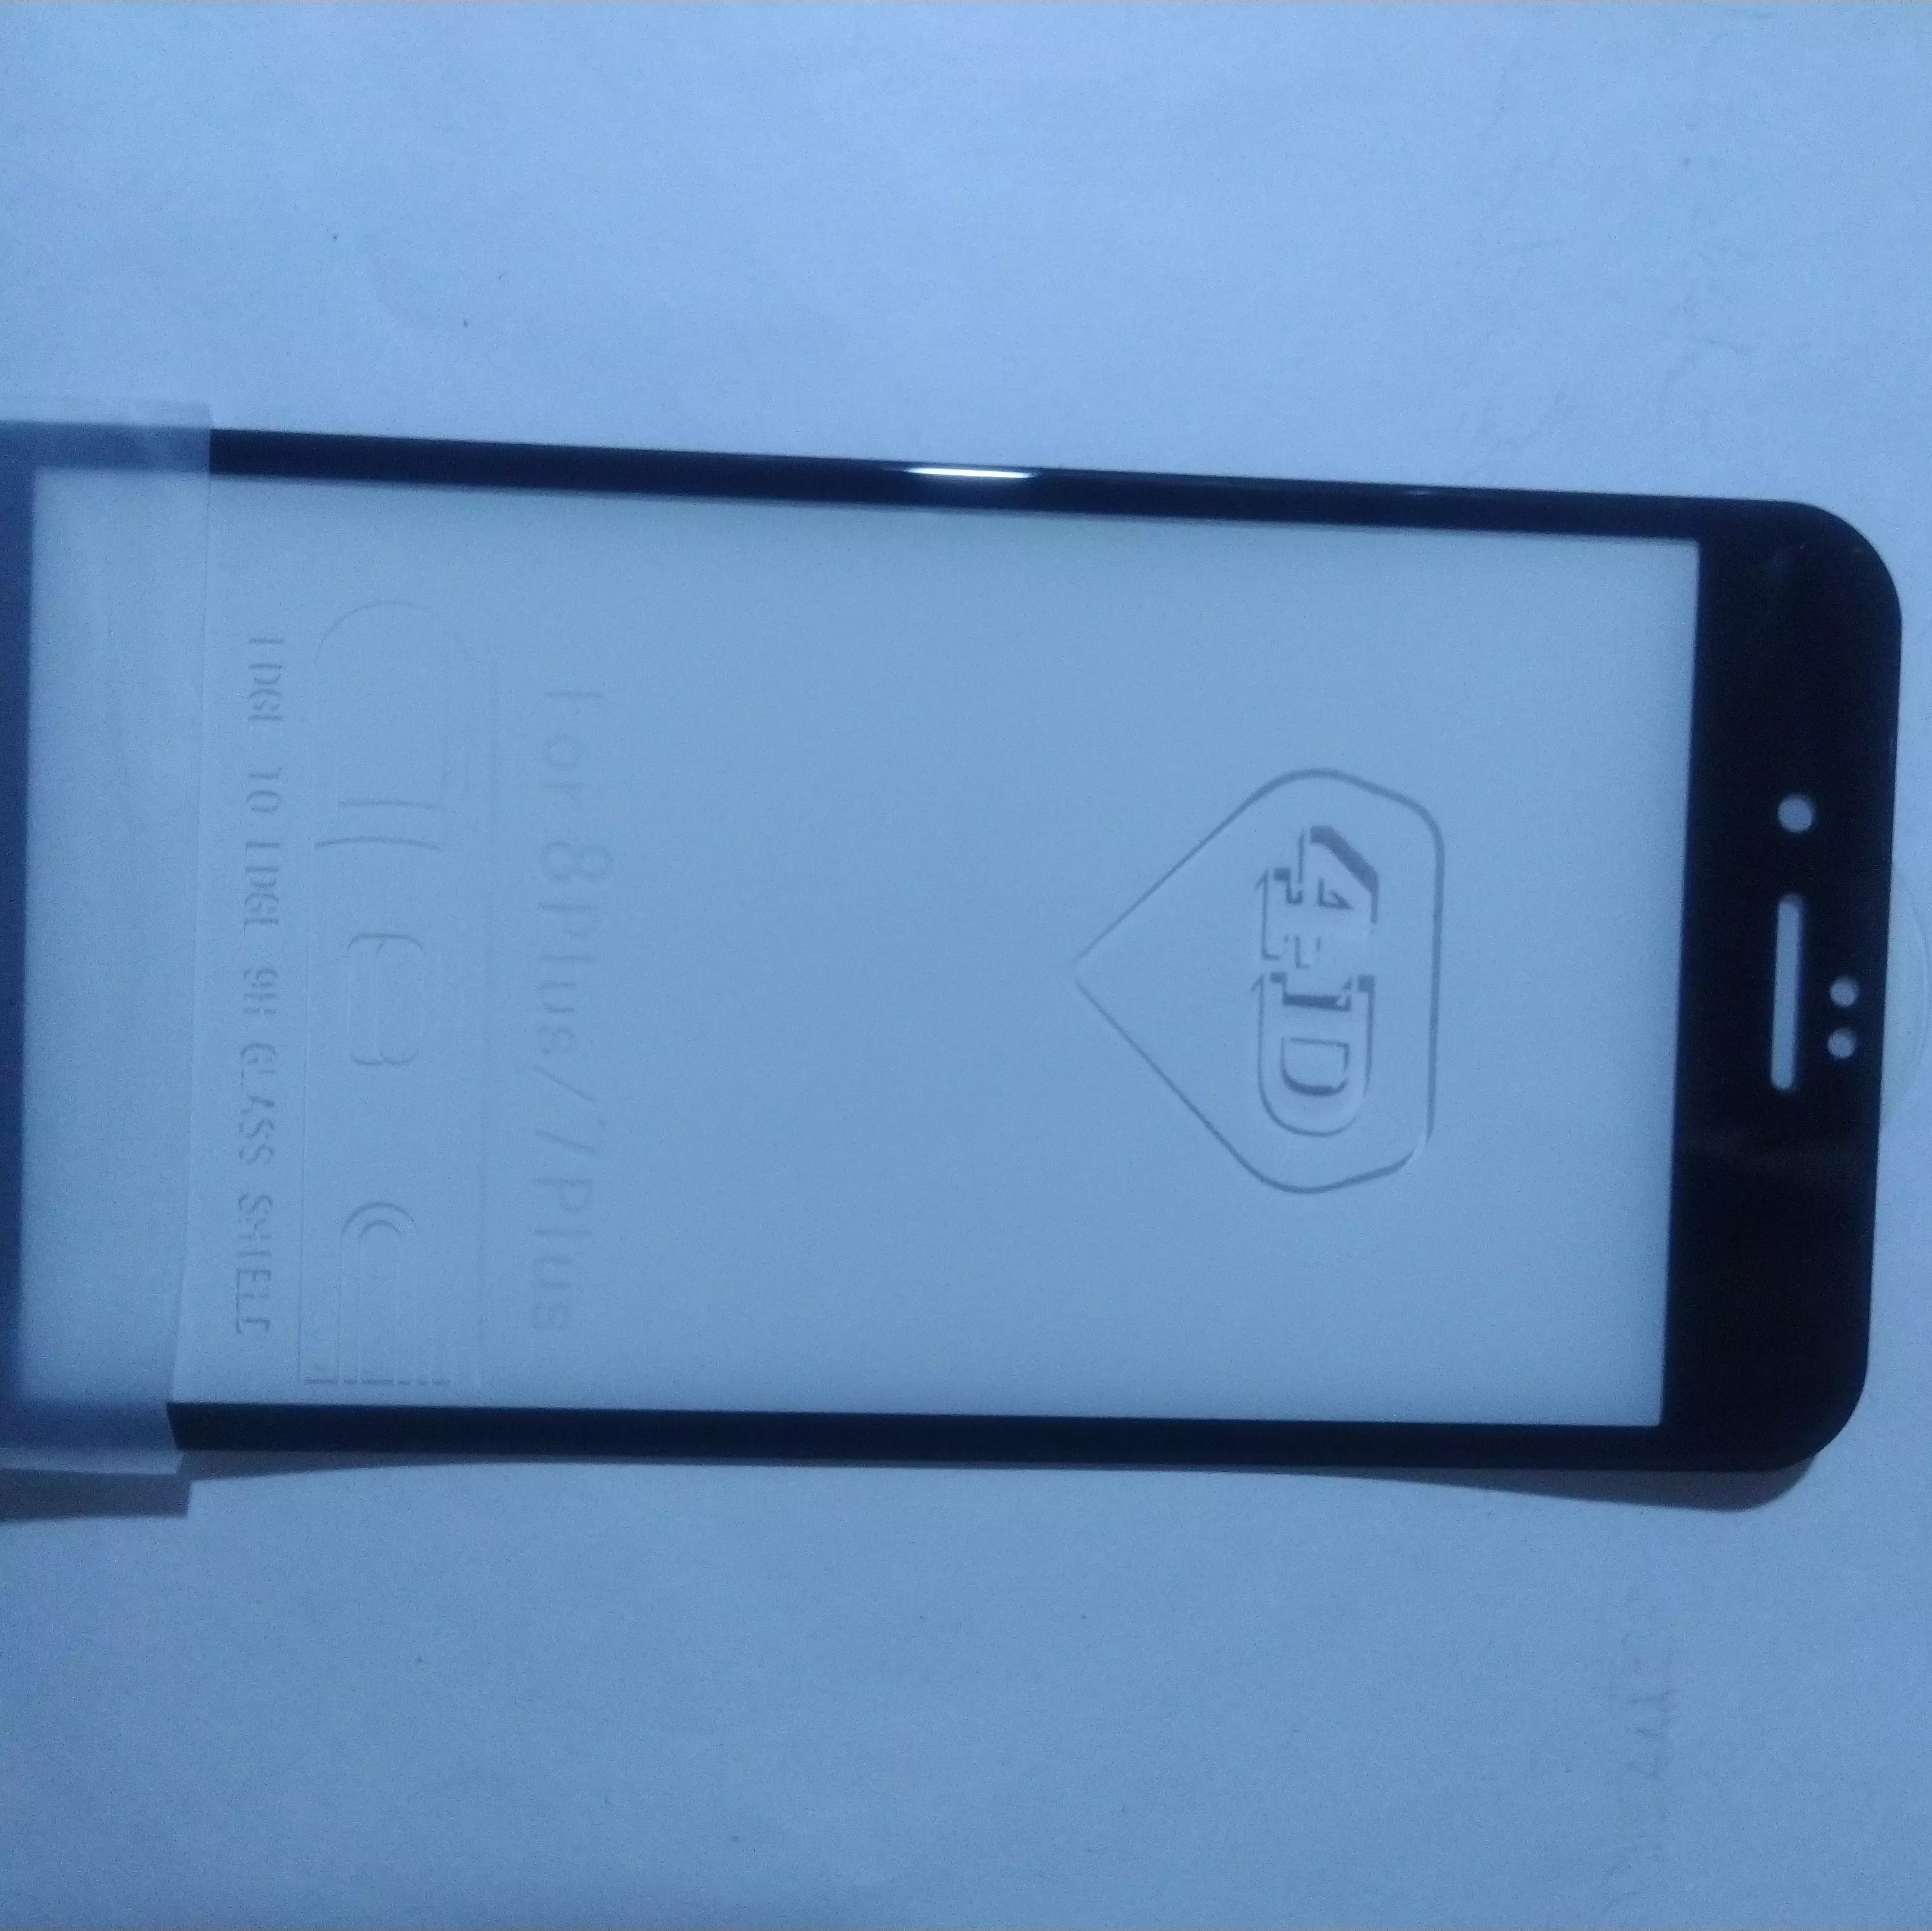 فول گلس لبه تا لبه آیapple iphone 7 plus 8 plus  شیشه ای 3 میل شفاف محافظ صفحه ا